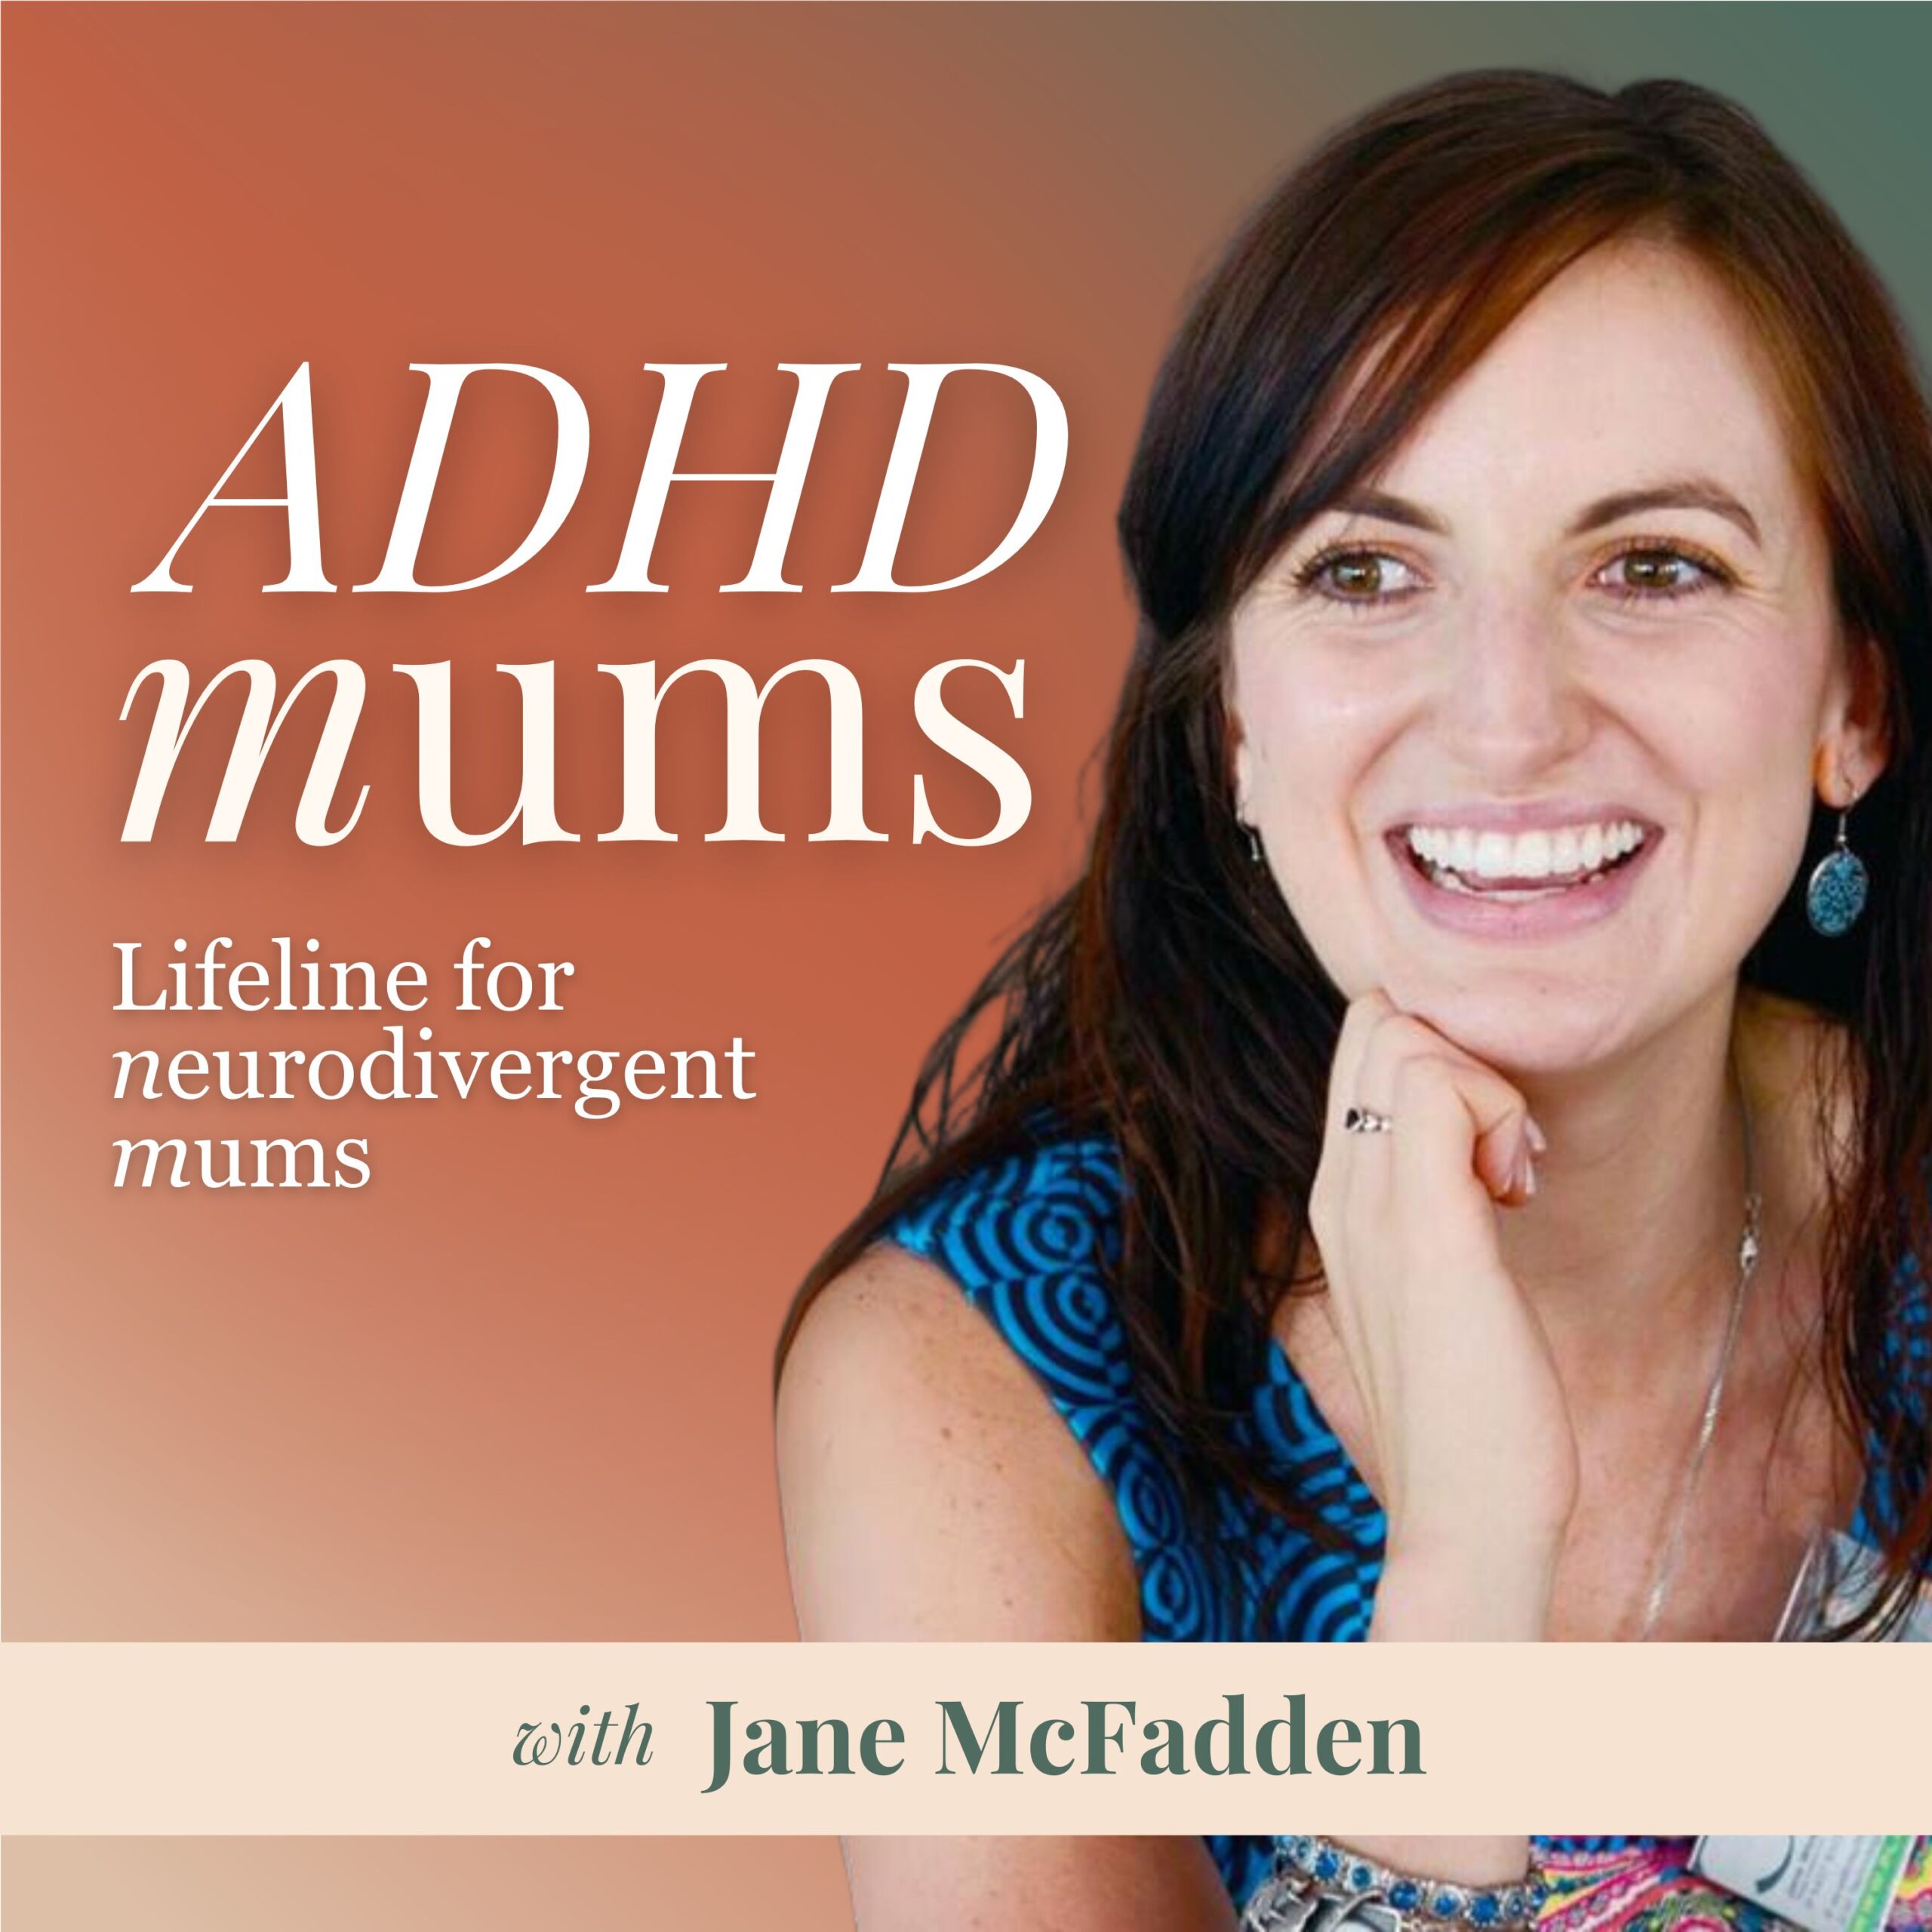 Podcast Artwork - Jane McFadden ADHD Mums